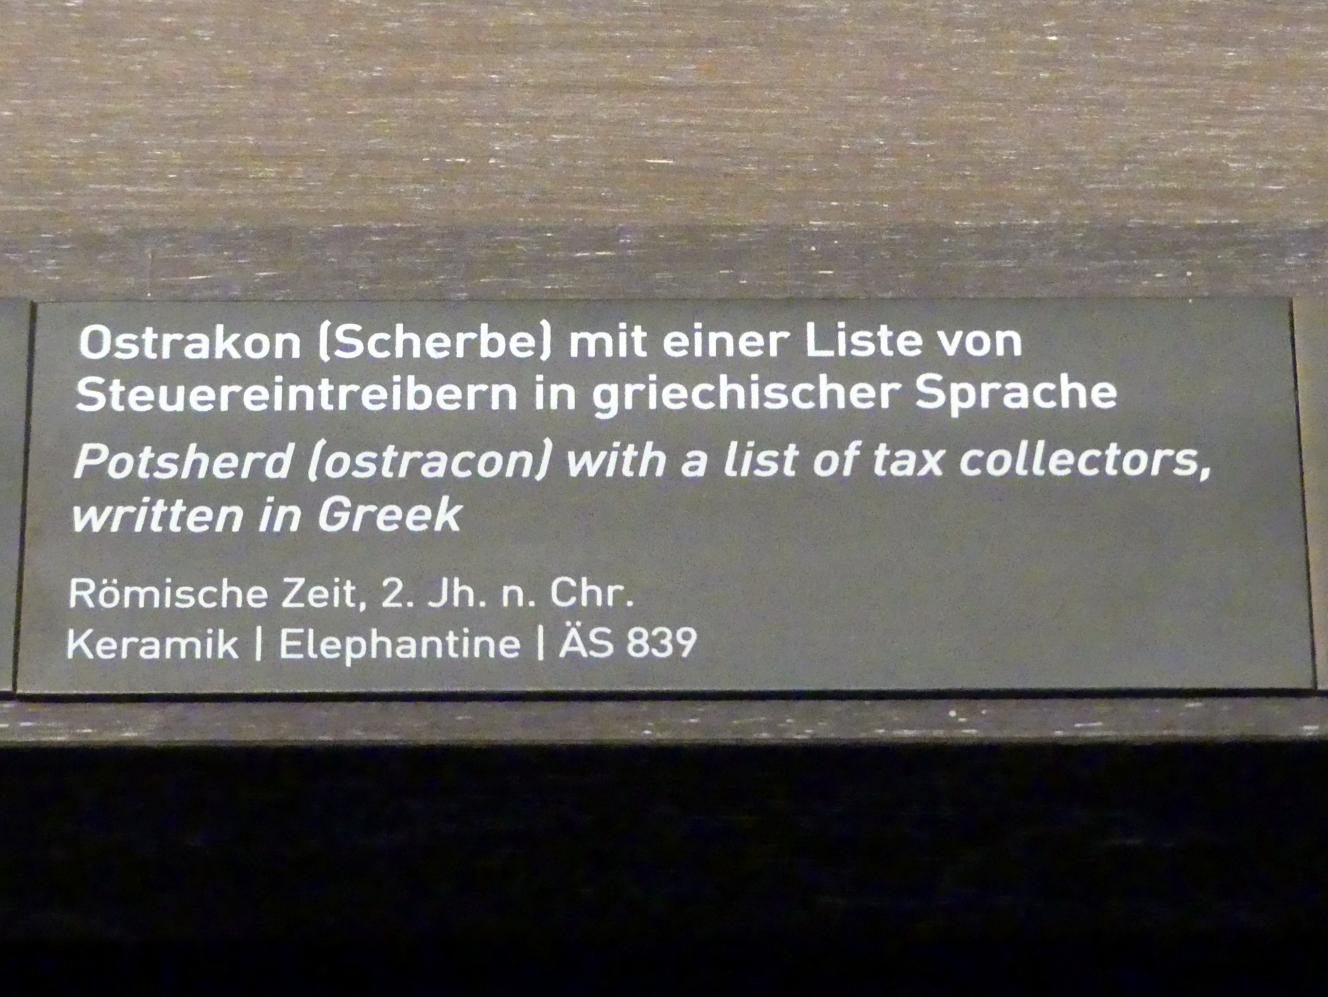 Ostrakon (Scherbe) mit einer Liste von Steuereintreibern in griechischer Sprache, Römische Kaiserzeit, 27 v. Chr. - 54 n. Chr., 200, Bild 2/2